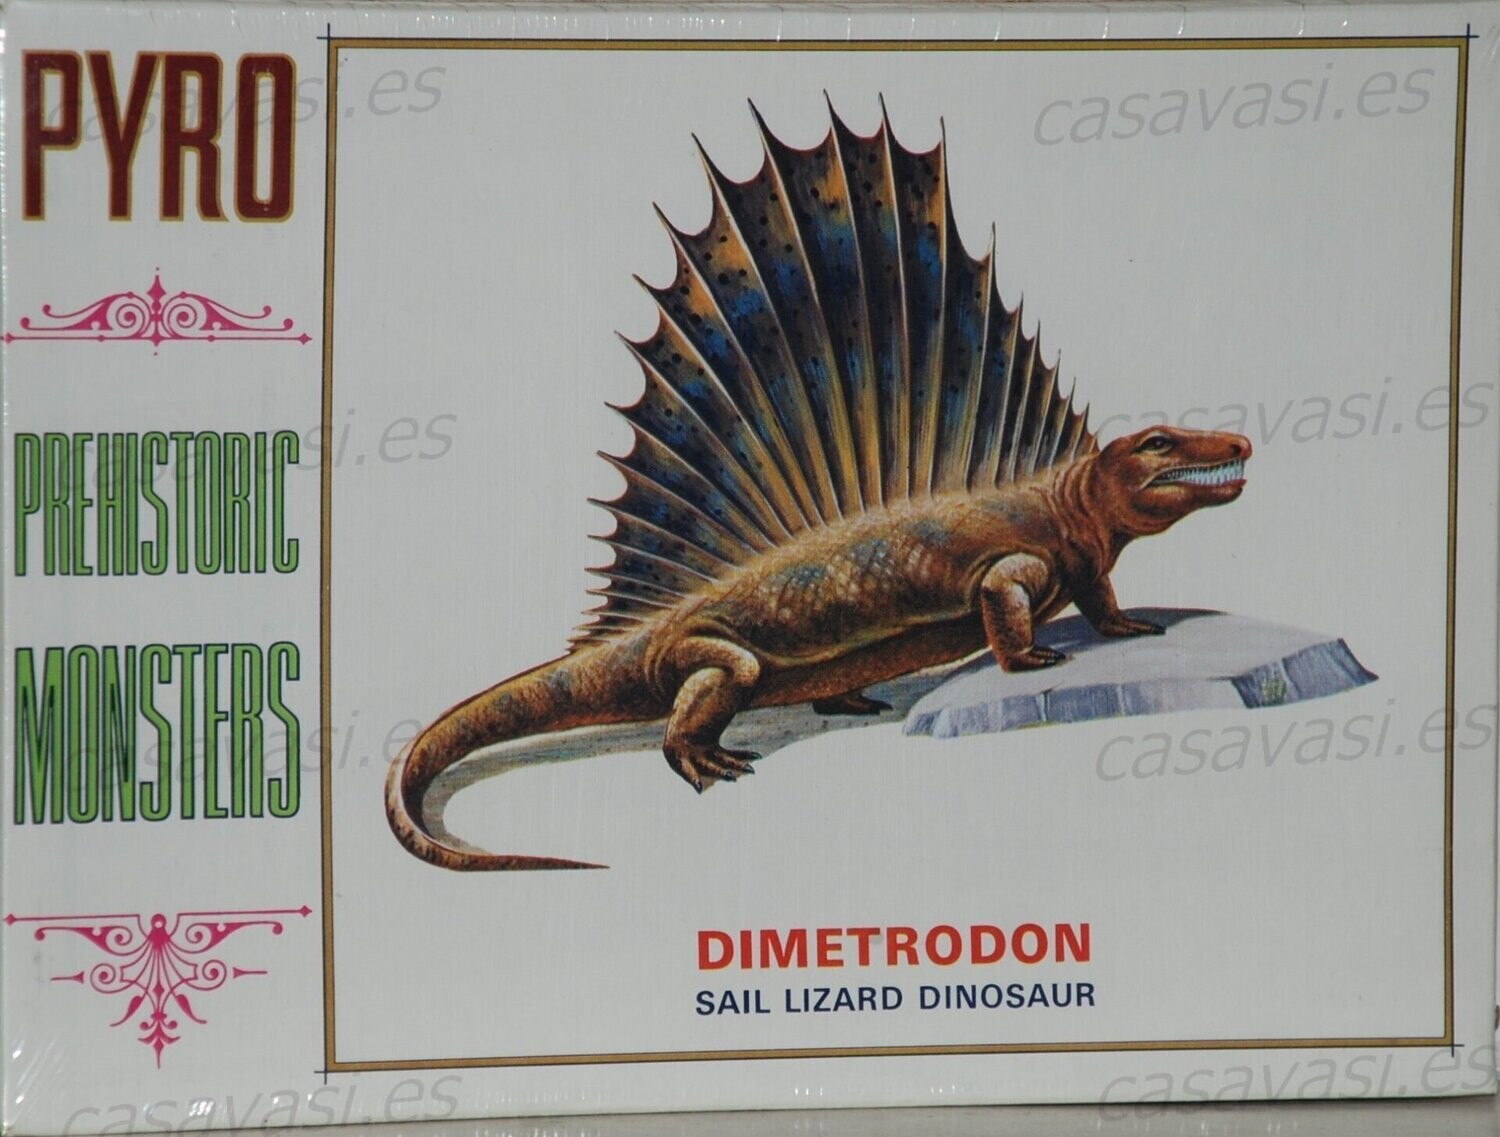 Pyro - d278-100 - Nº6 - Dimetrodon - Sail Lizard Dinosaur
Box Size 25 x 18 cm.